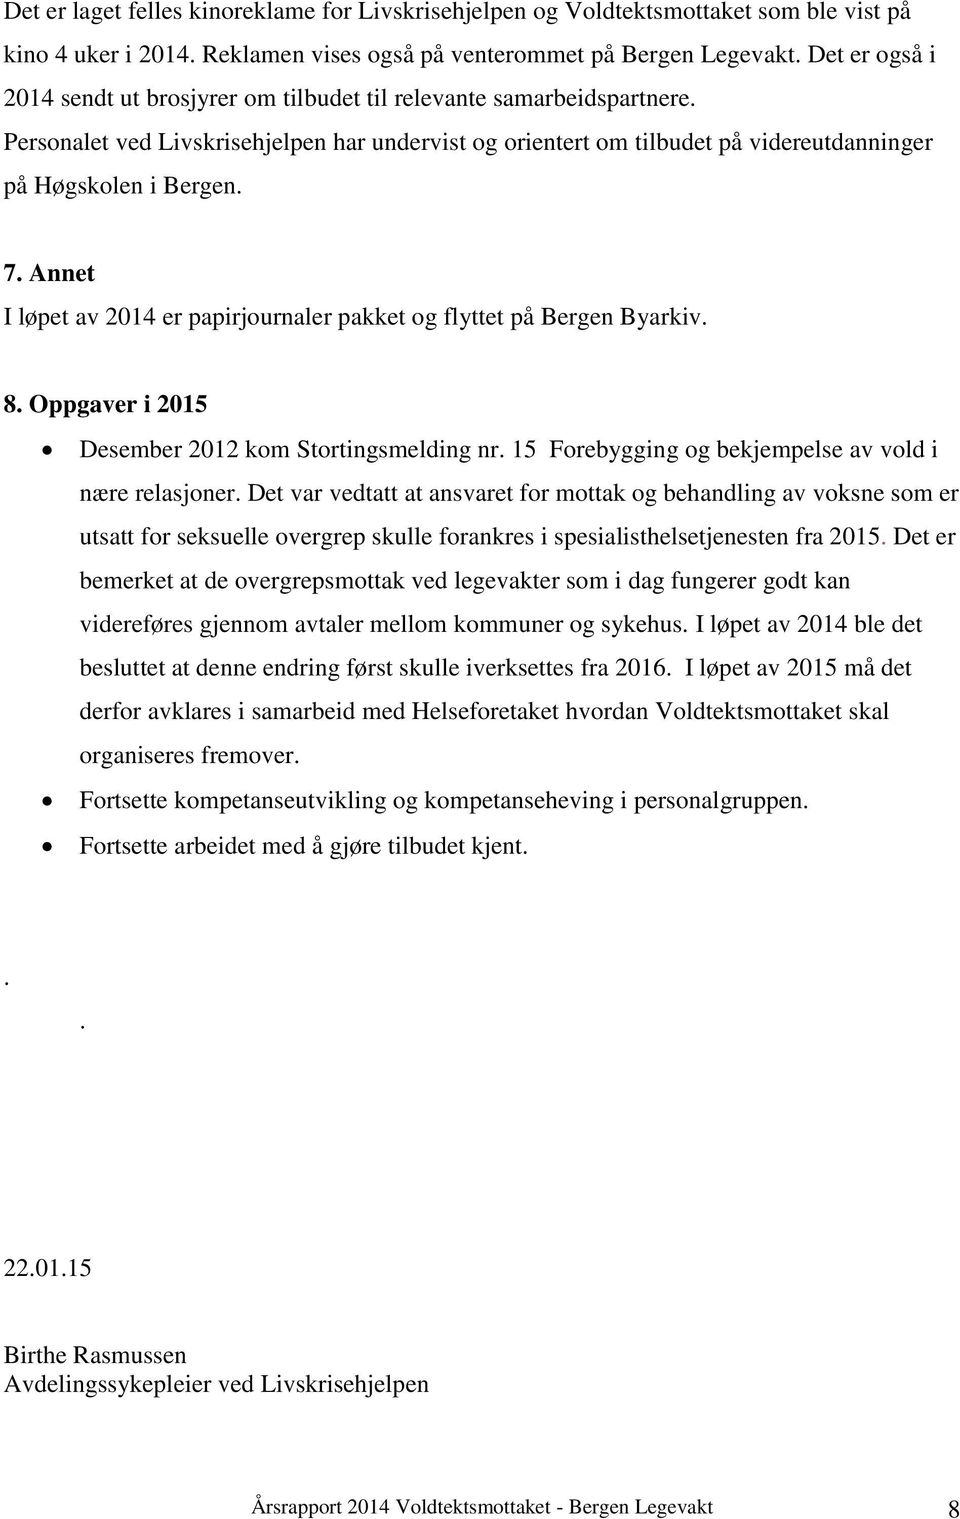 7. Annet I løpet av 2014 er papirjournaler pakket og flyttet på Bergen Byarkiv. 8. Oppgaver i 2015 Desember 2012 kom Stortingsmelding nr. 15 Forebygging og bekjempelse av vold i nære relasjoner.